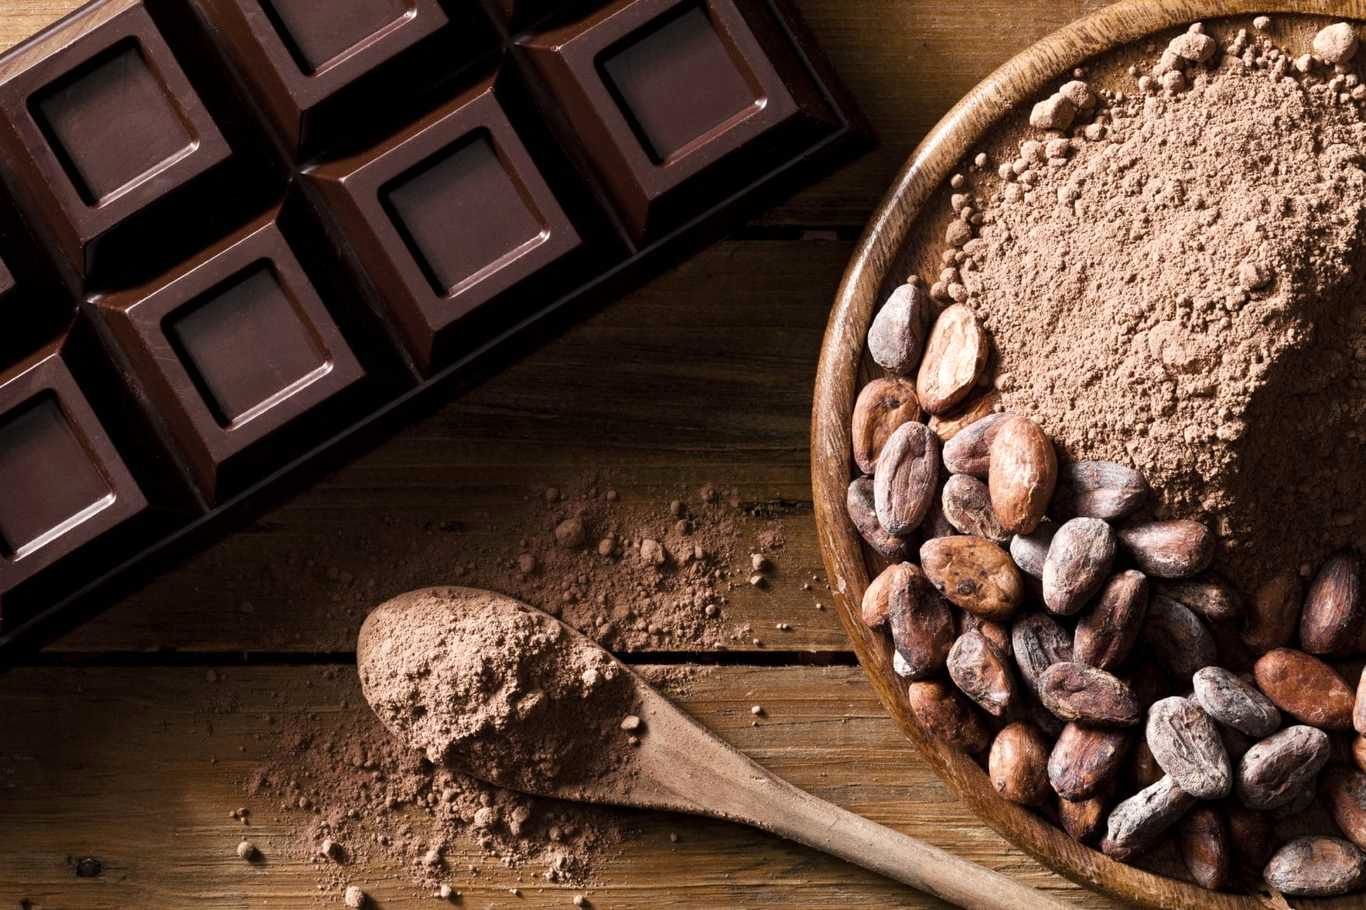 ۵ دلیل برای اینکه بیشتر کاکائو بخورید!